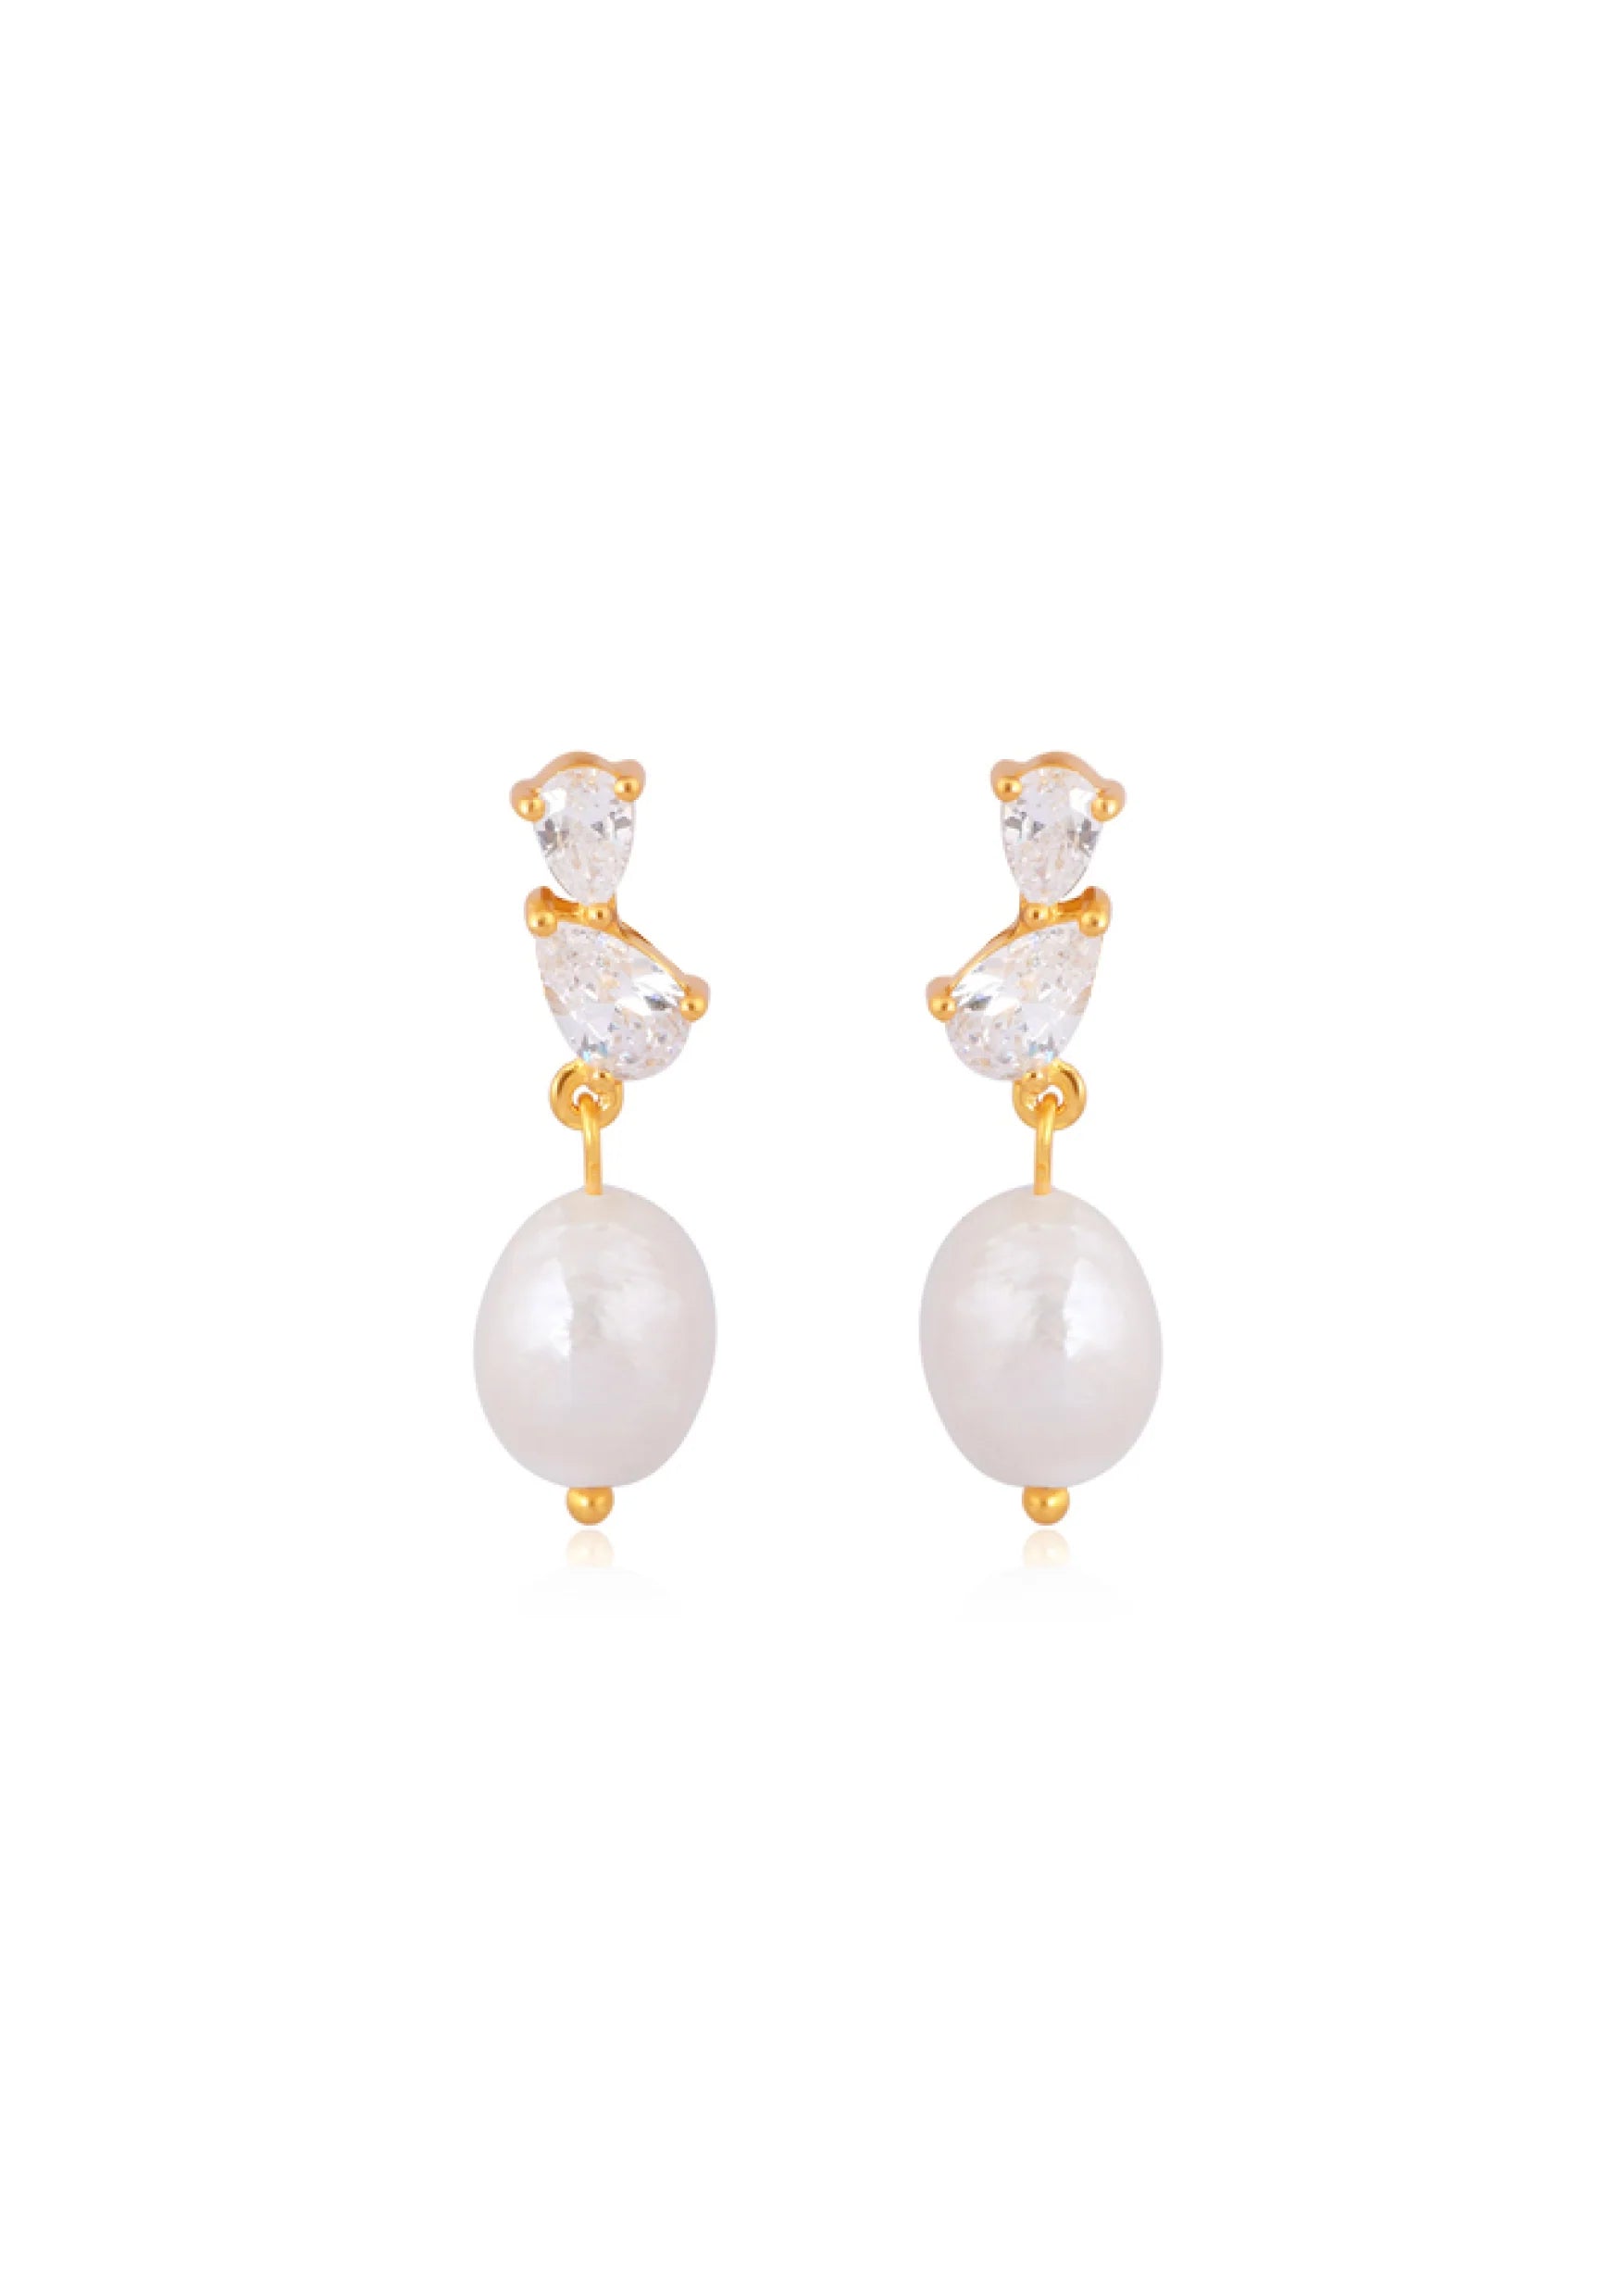 Pearl Bridal Earrings | Elegant Pearl Earrings for the Bride to Be ...